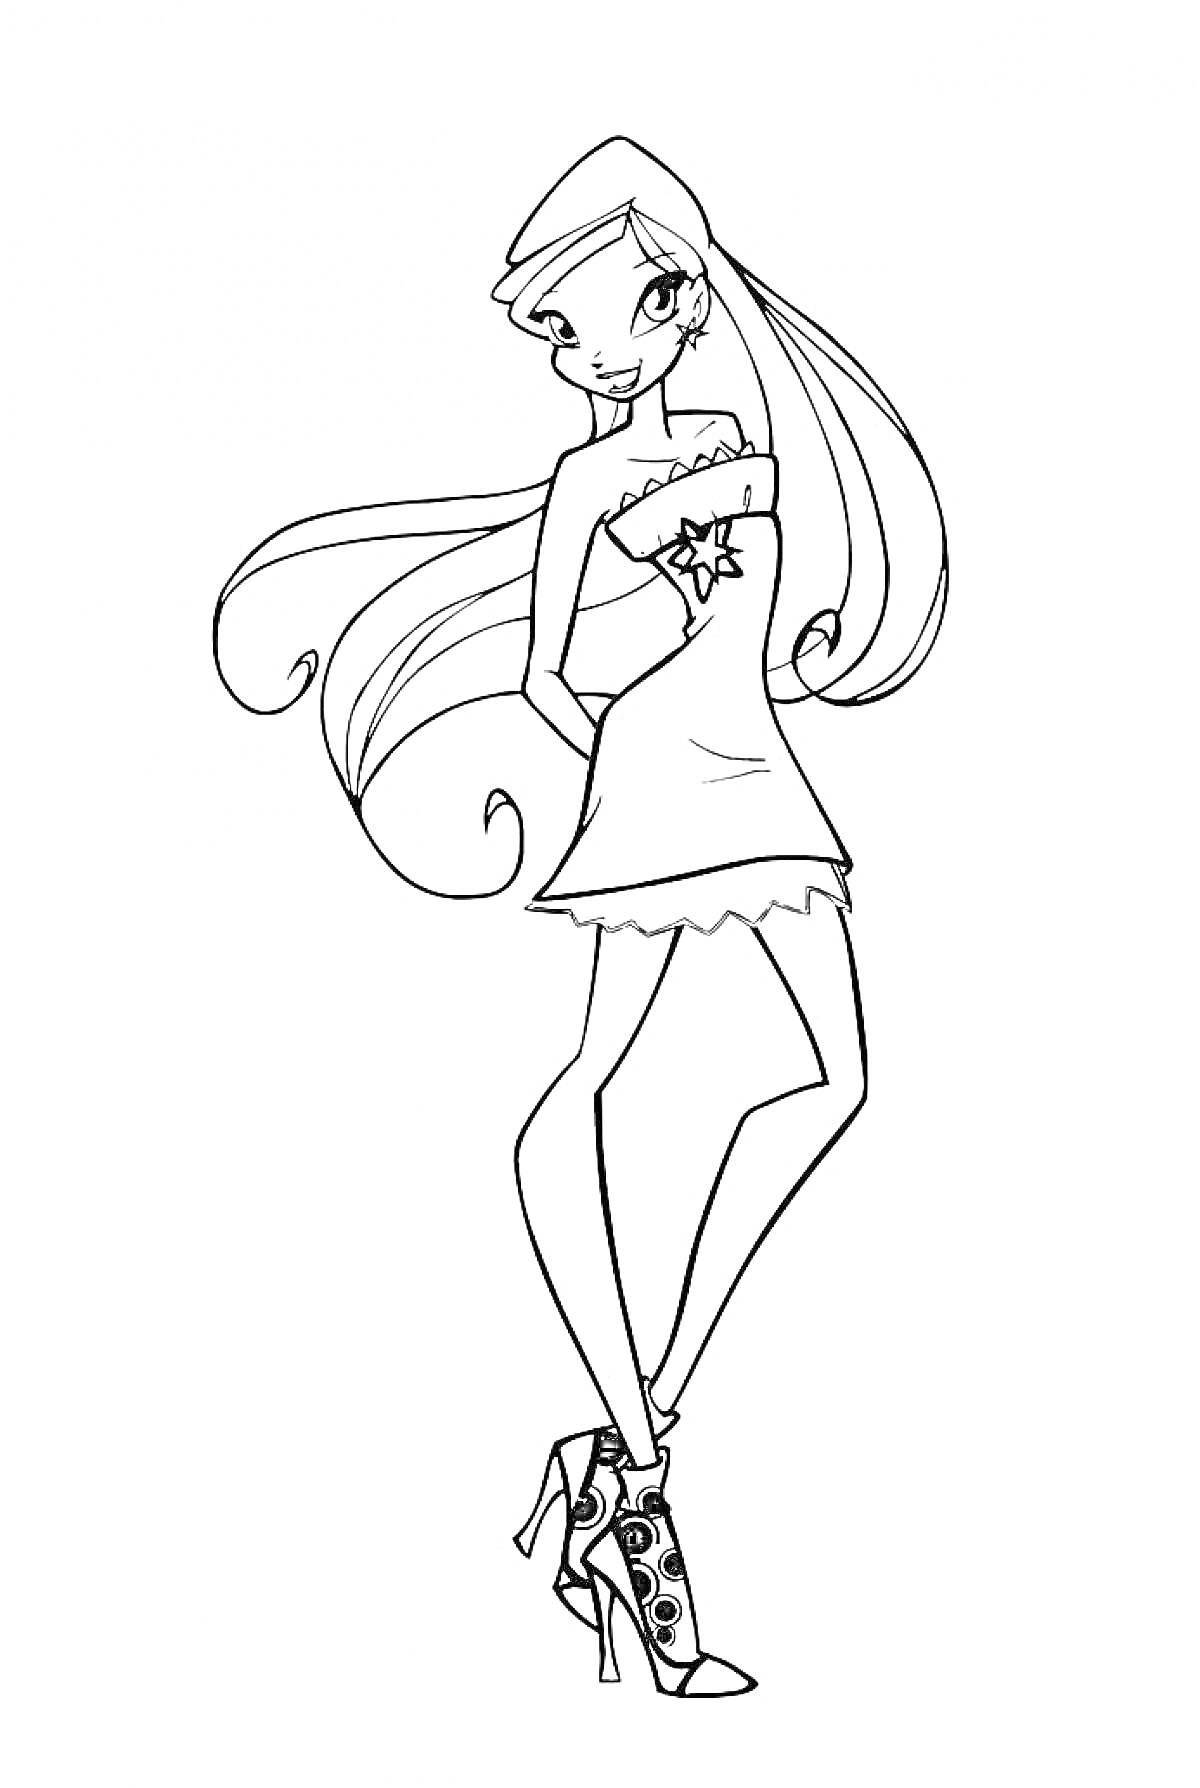 Винкс Стелла в коротком платье и высоких ботильонах на каблуке, с длинными волосами и звёздной брошью на платье